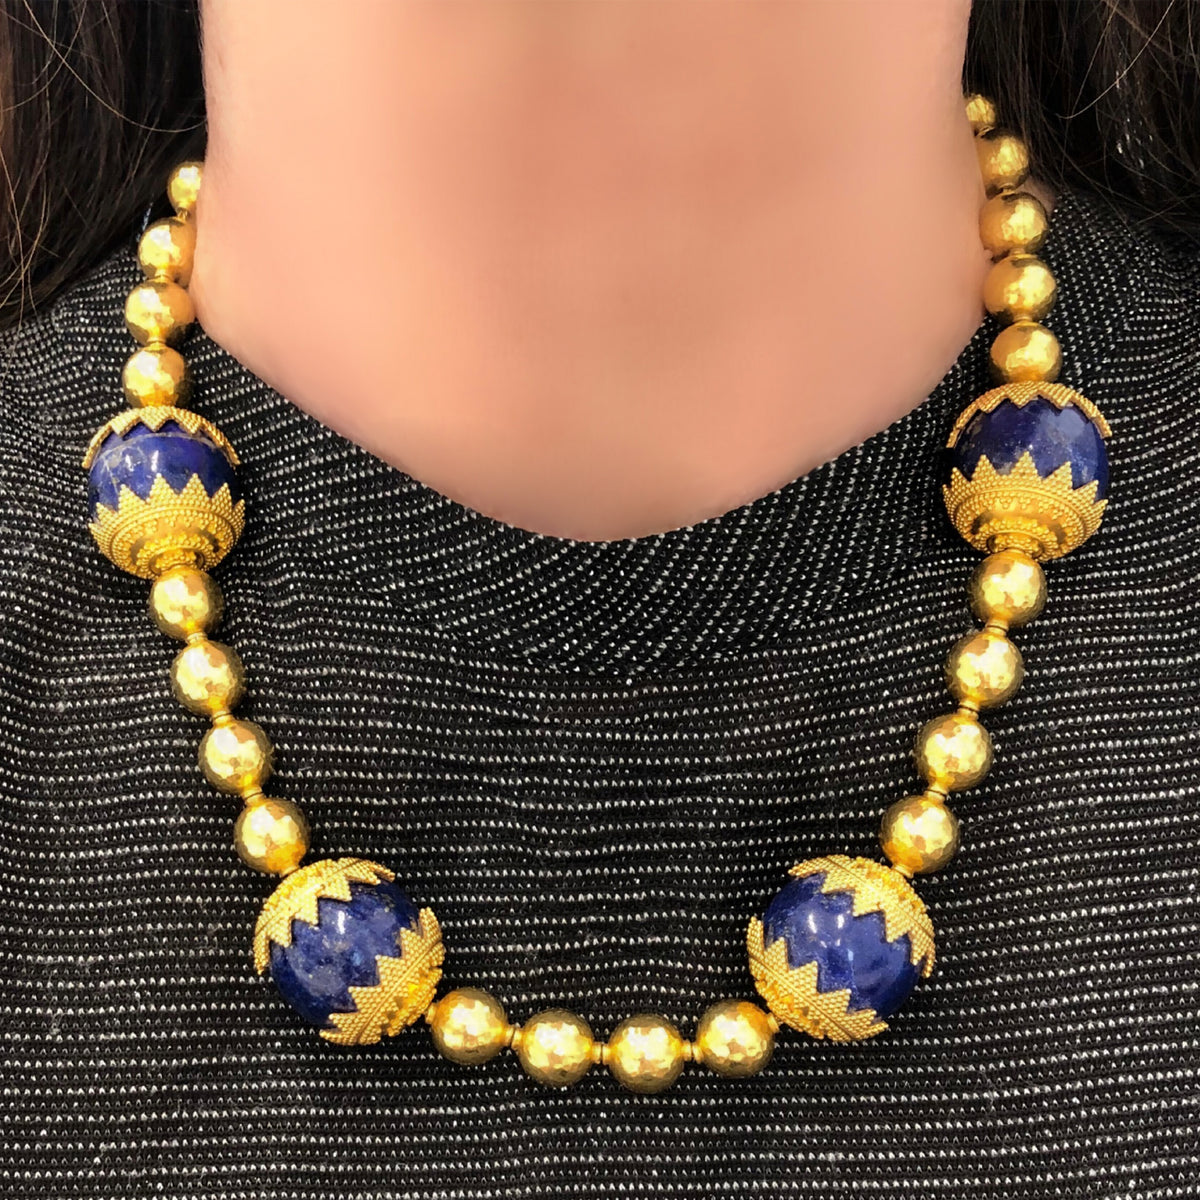 High Karat Gold Necklace with Lapis Lazuli Beads CA 1970